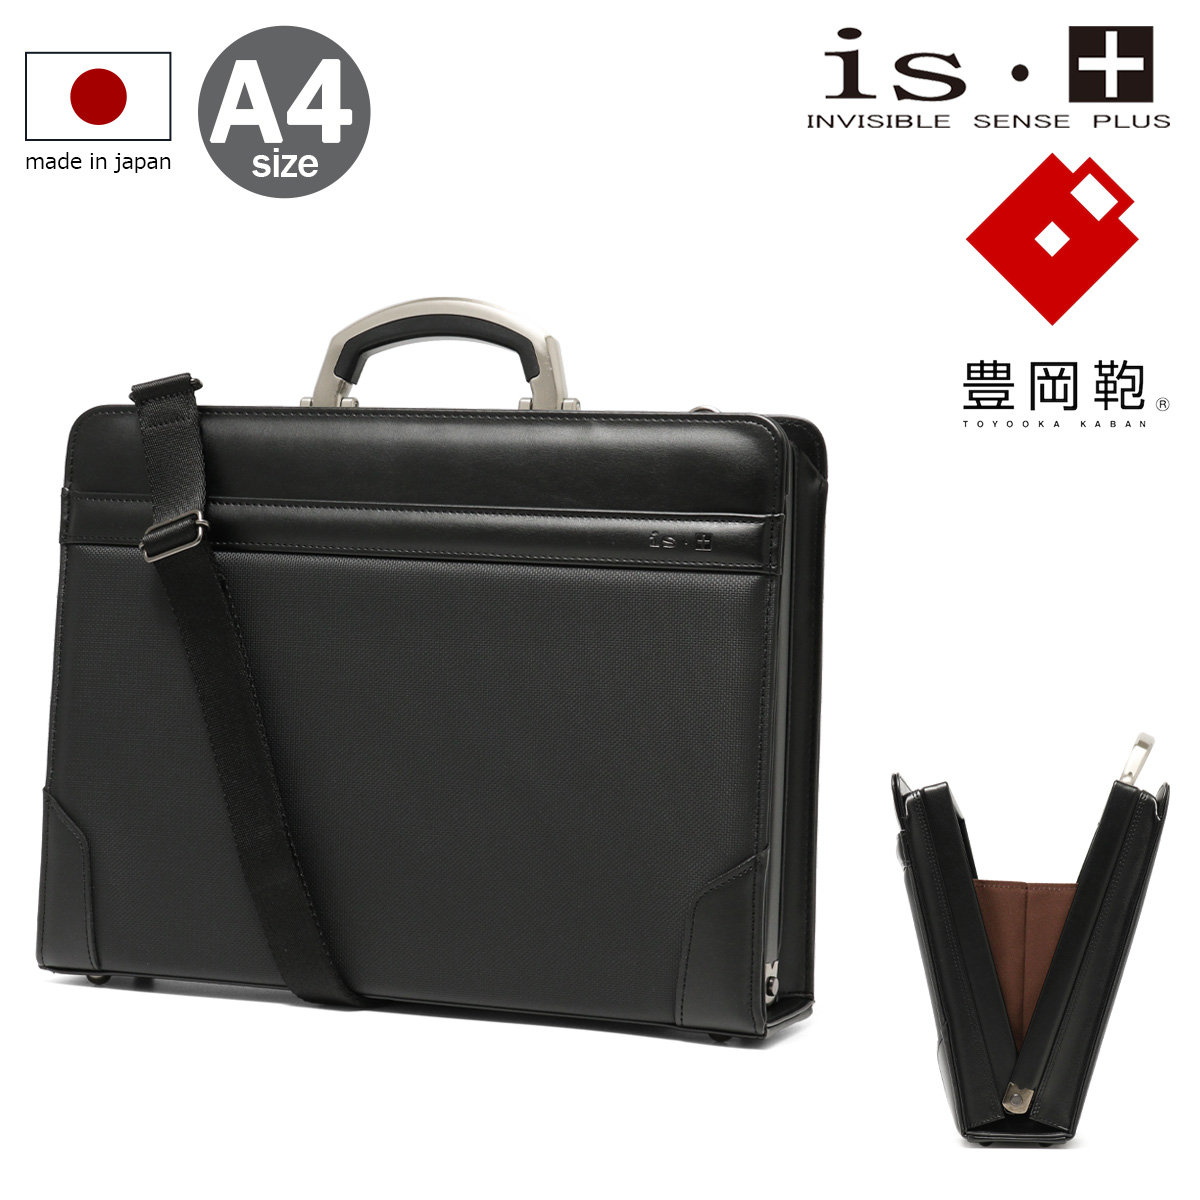 アイエスプラス 豊岡鞄 ブリーフケース A4 2WAY メンズ 日本製 230 